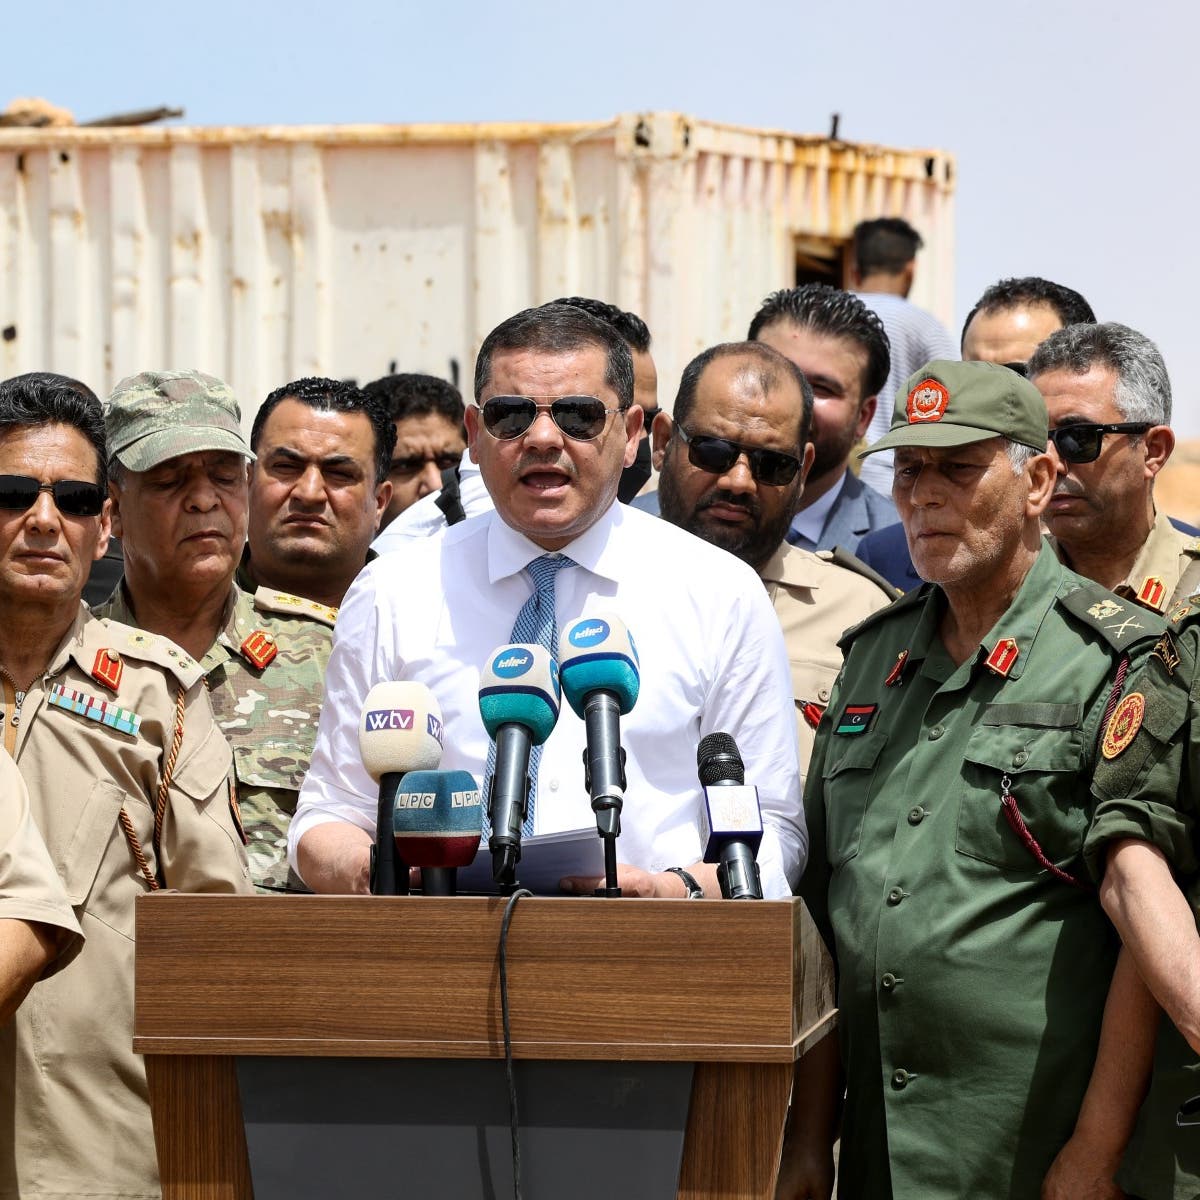 فضائح الفساد تلاحق حكومة ليبيا.. فهل تسرّع بإقالتها؟